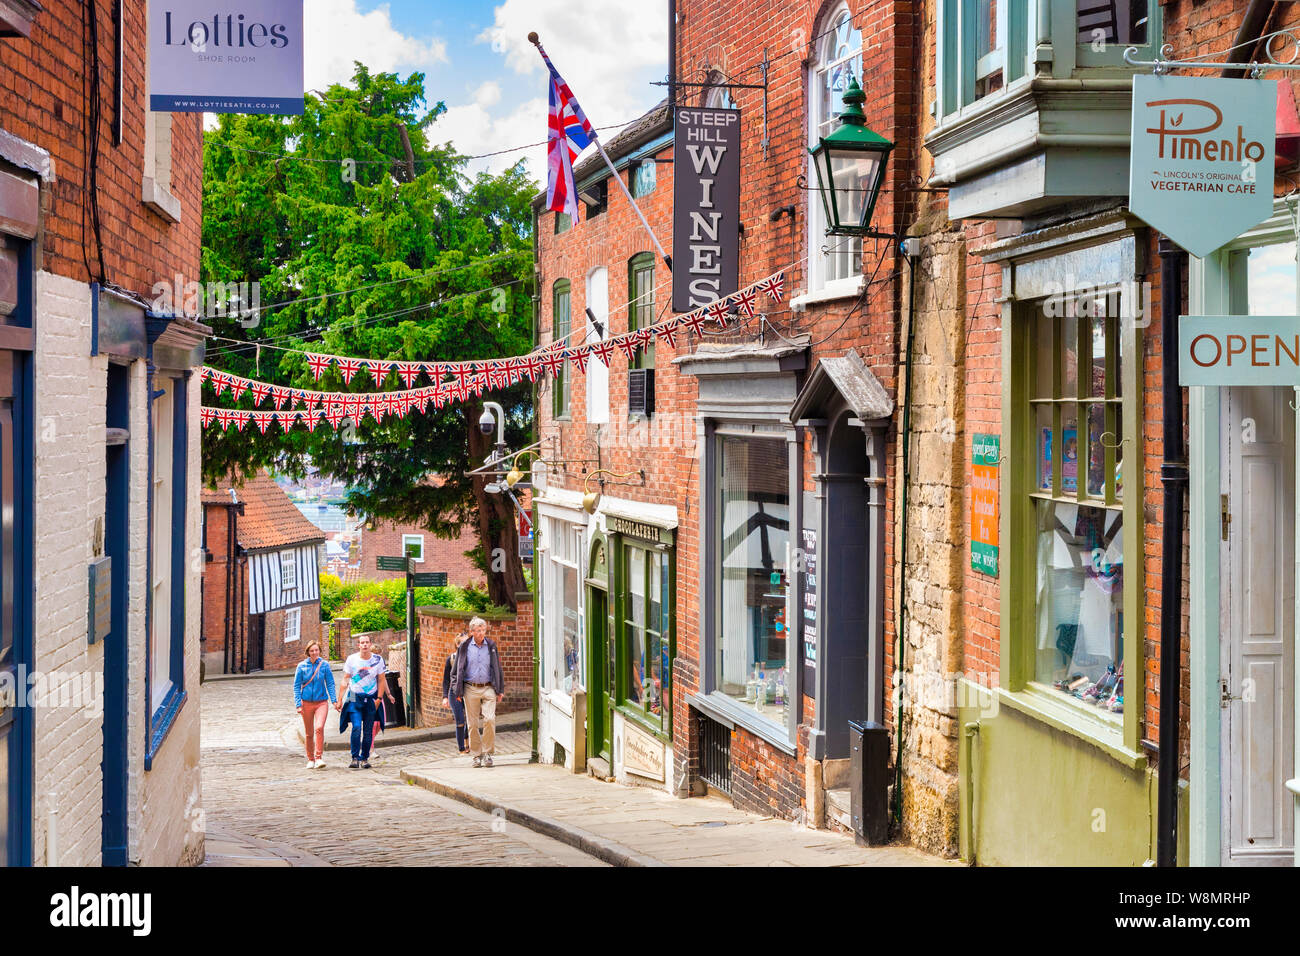 2 Juillet 2019 : Lincoln, UK - abrupte, la célèbre rue historique, avec des boutiques indépendantes, des cafés et des touristes en montant la colline. Banque D'Images